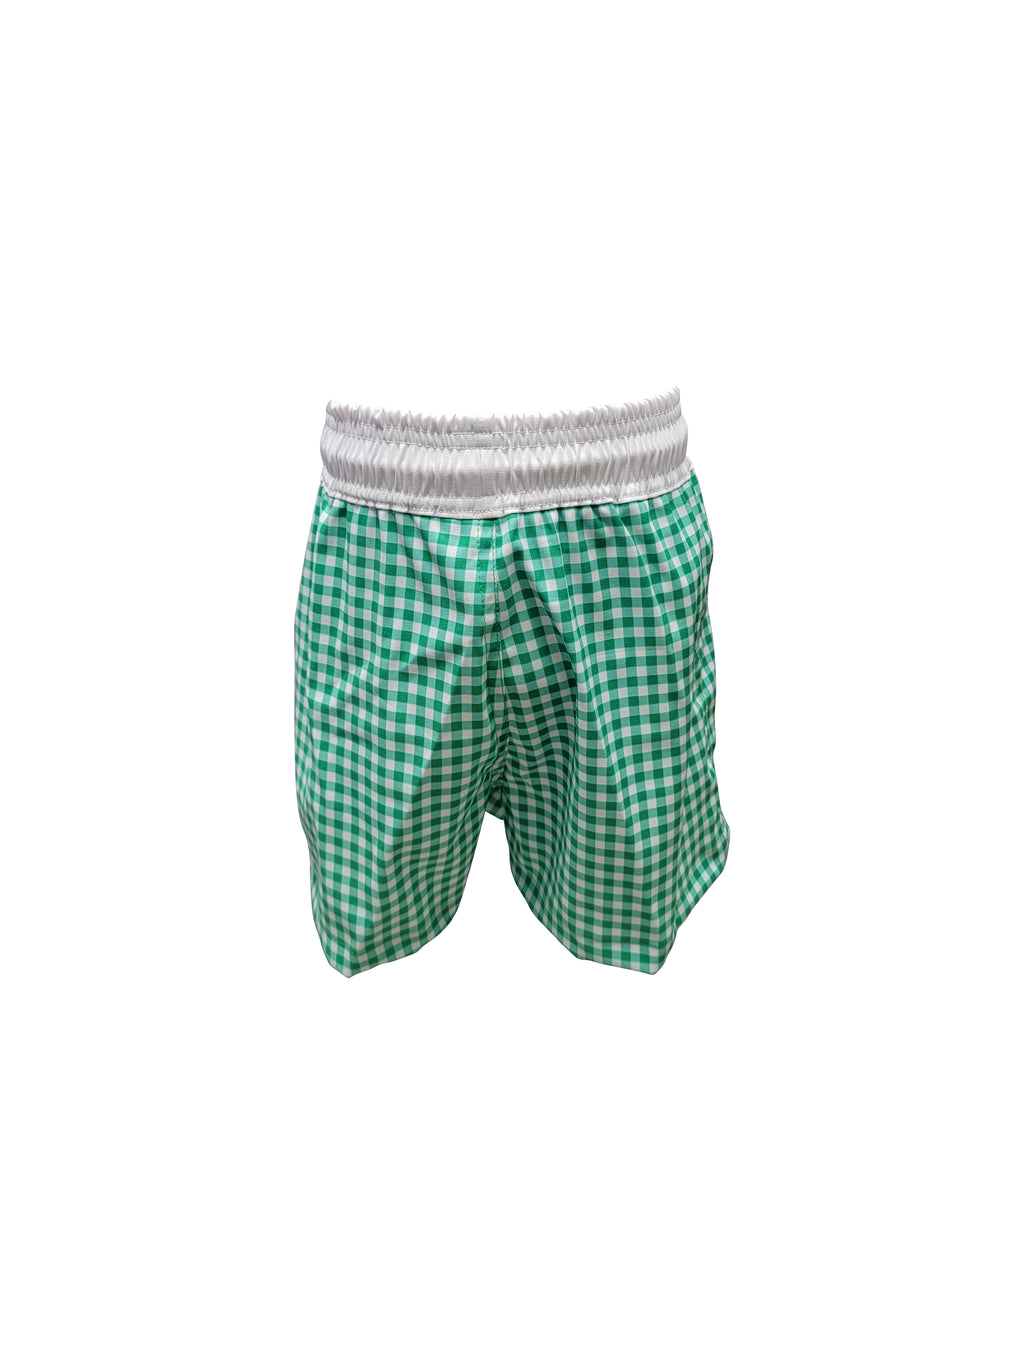 Boy's "Green Checks" Swim Trunks - Little Threads Inc. Children's Clothing